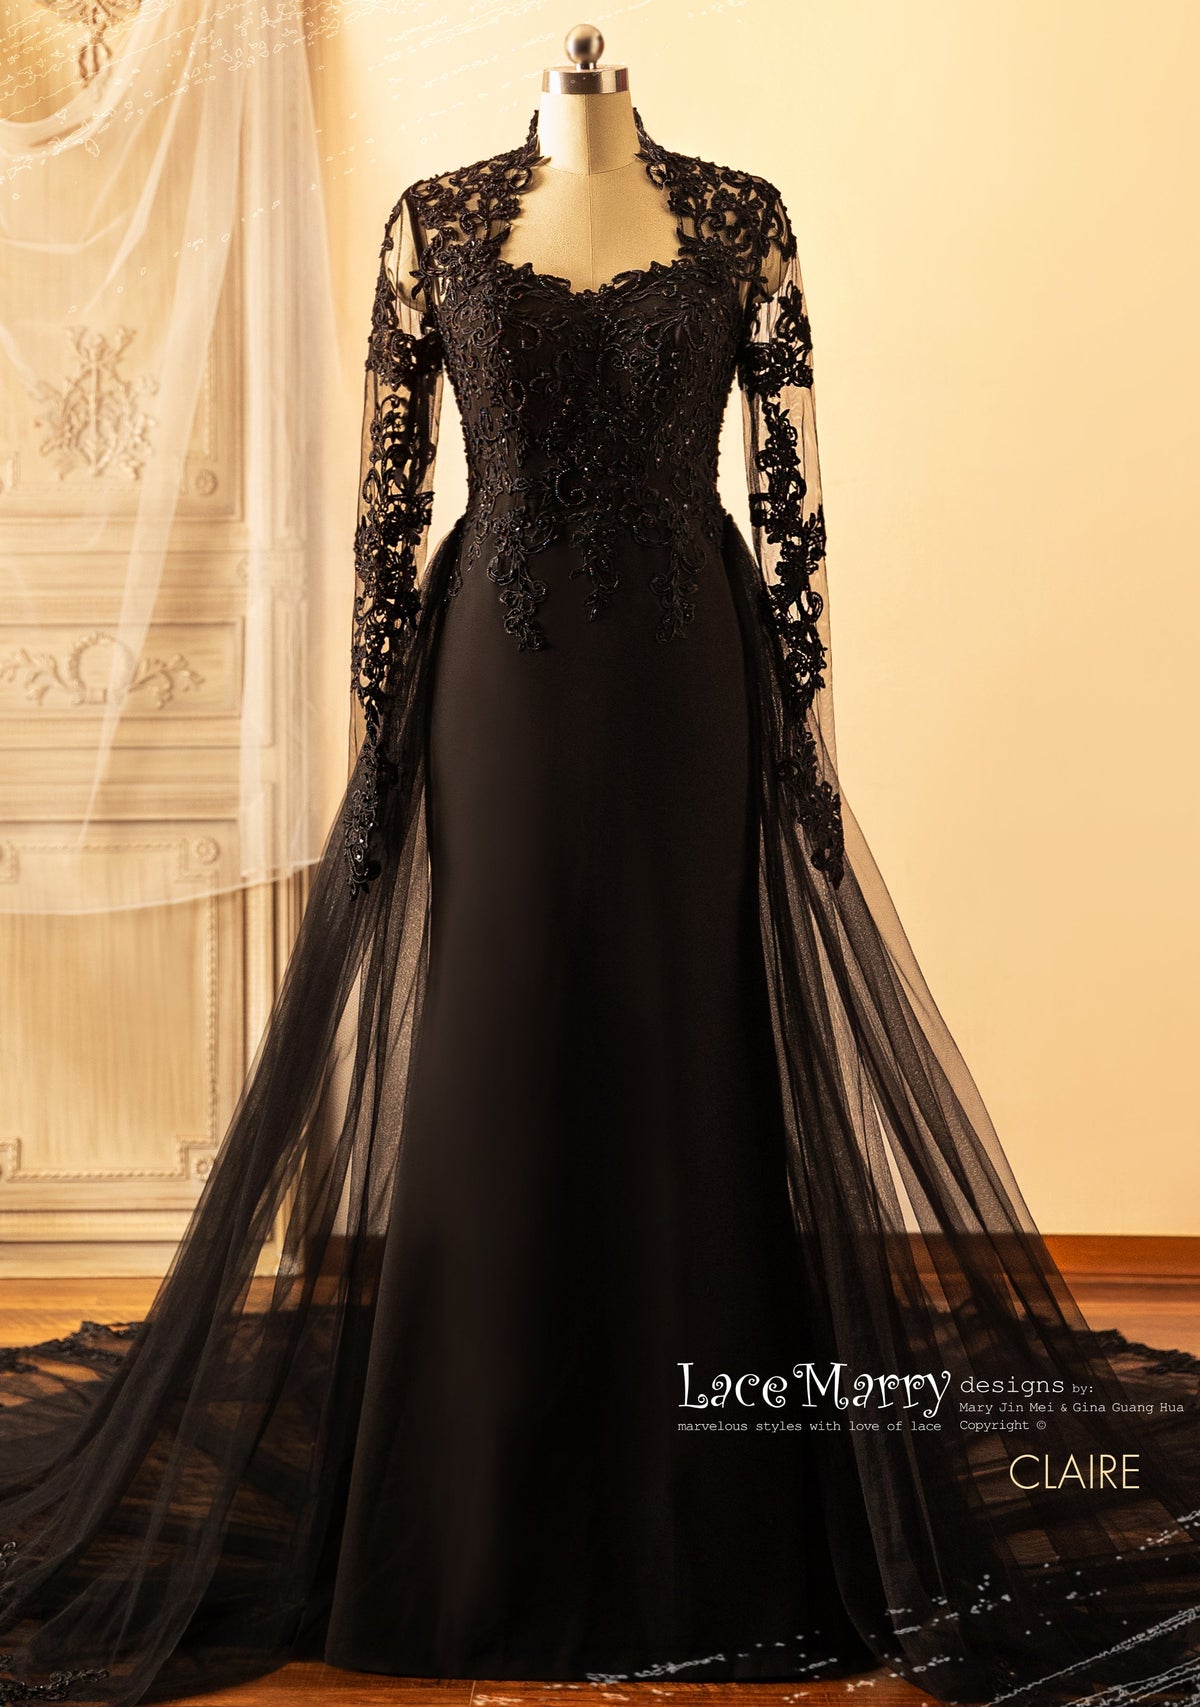 CLAIRE / Black Wedding Dress with Queen Anne Neckline